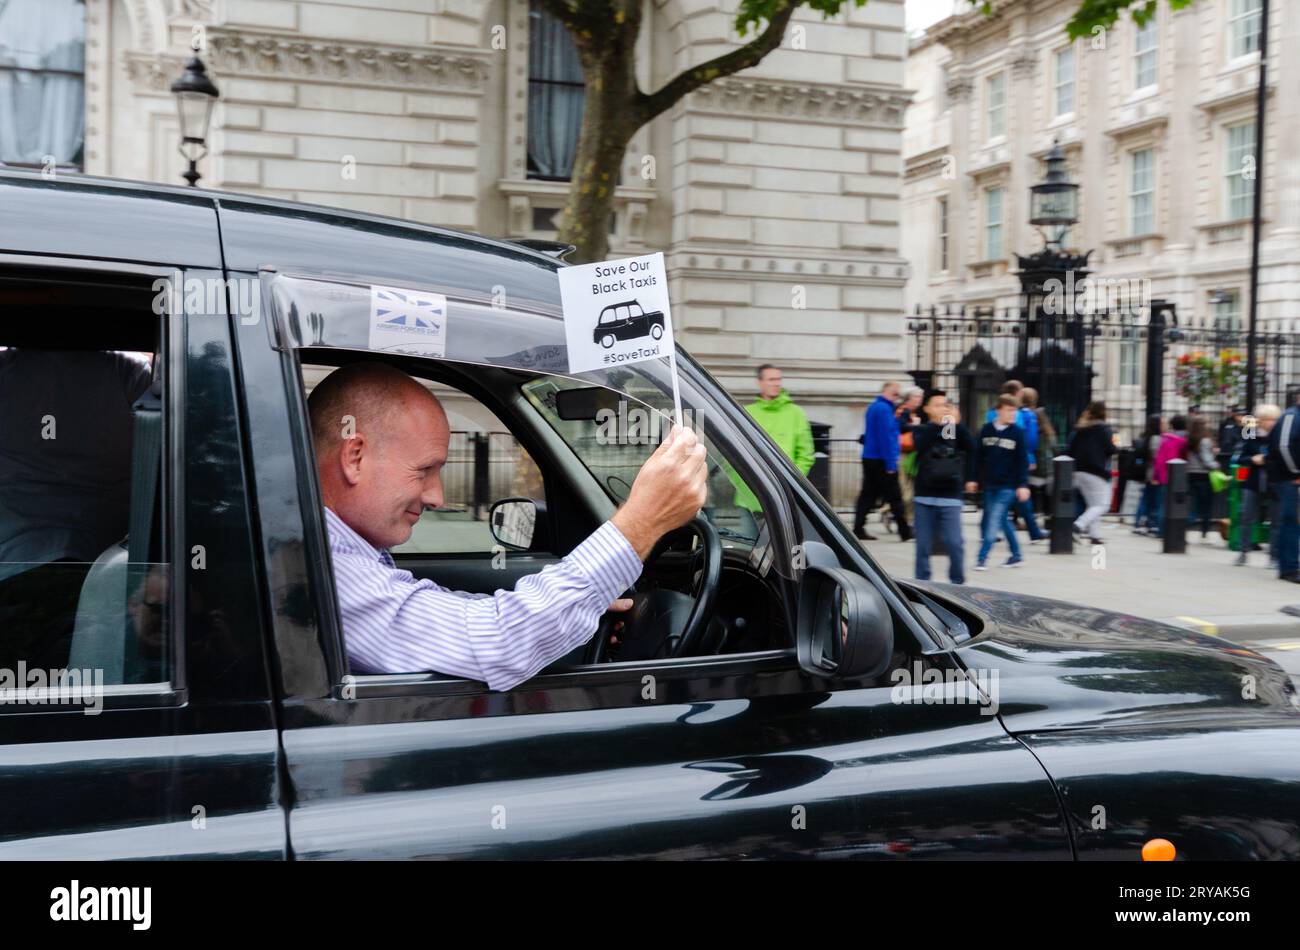 London Black Taxifahrer protestierte gegen die scheinbare Unterstützung der Regierung und des Verkehrs für London in Richtung Uber. Protest gegen Gesetzesänderungen Stockfoto